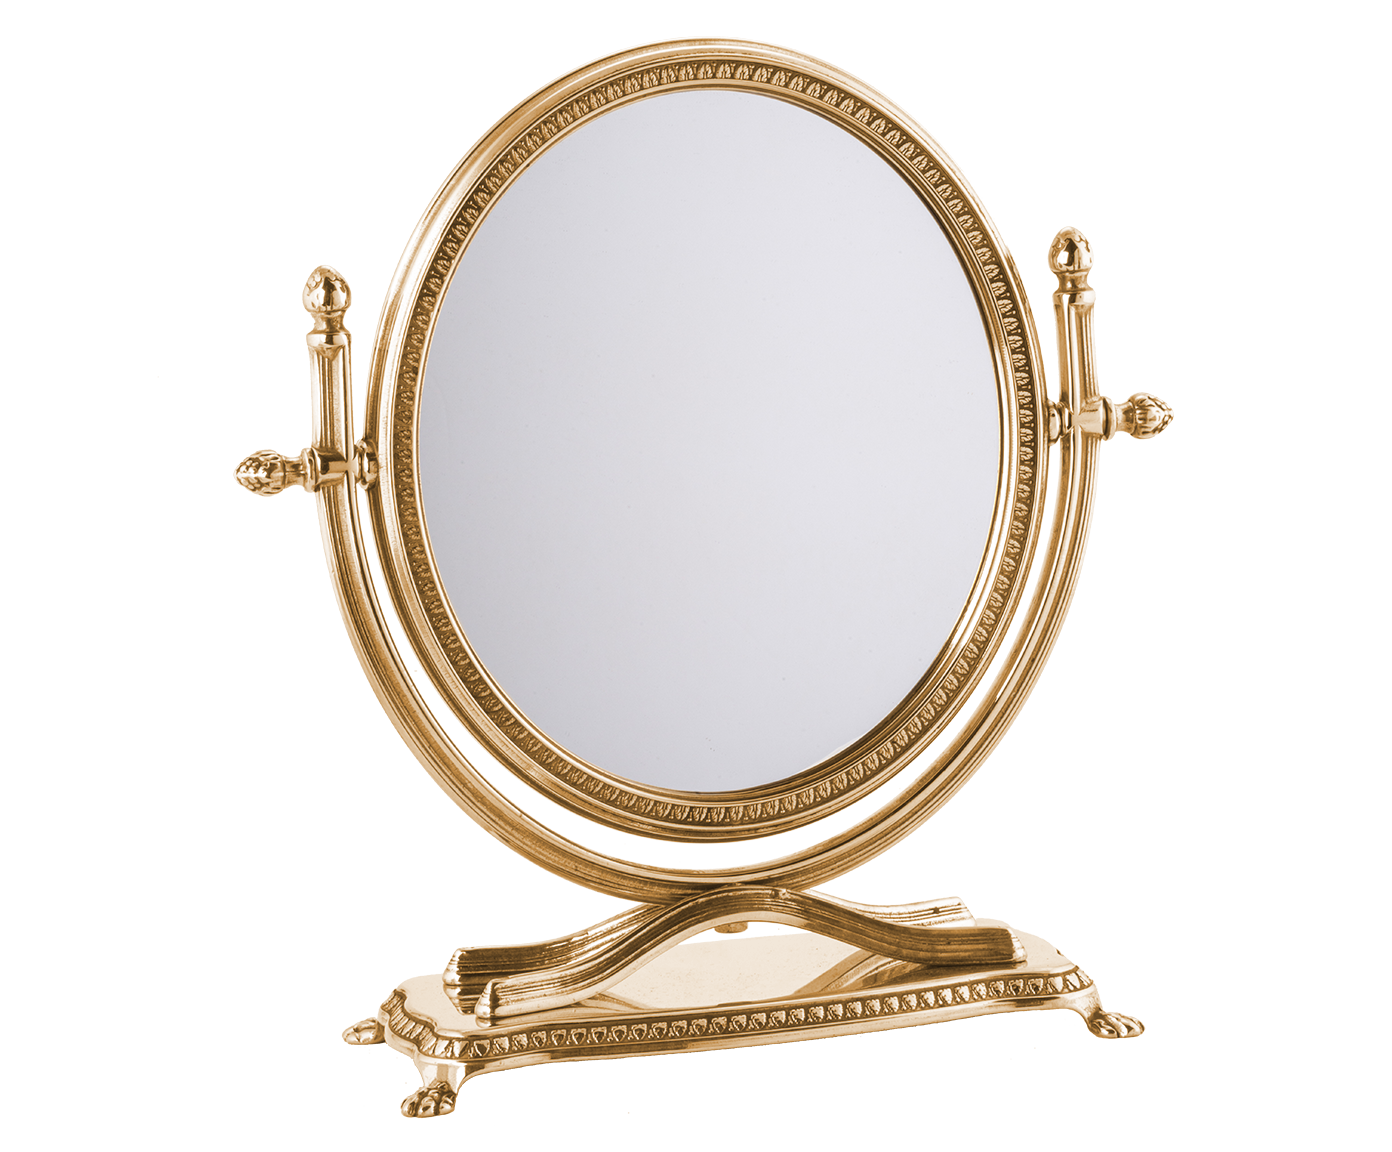 Зеркало в прихожую, ванную комнату круглое двухстороннее, с эффектом увеличения, 29х30 см, 01256